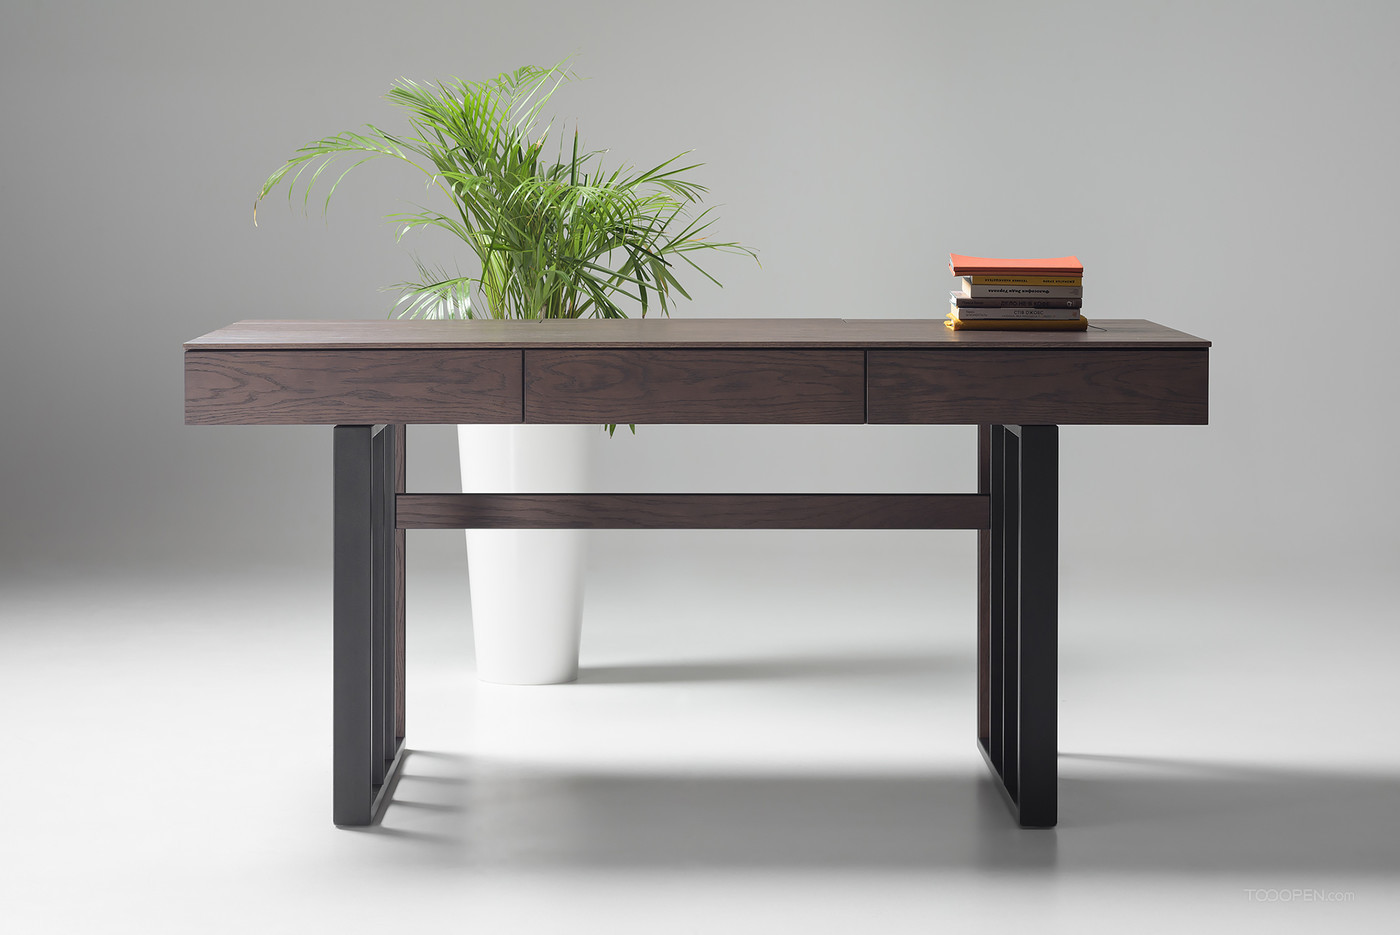 简约现代实木办公桌家具产品设计欣赏-01